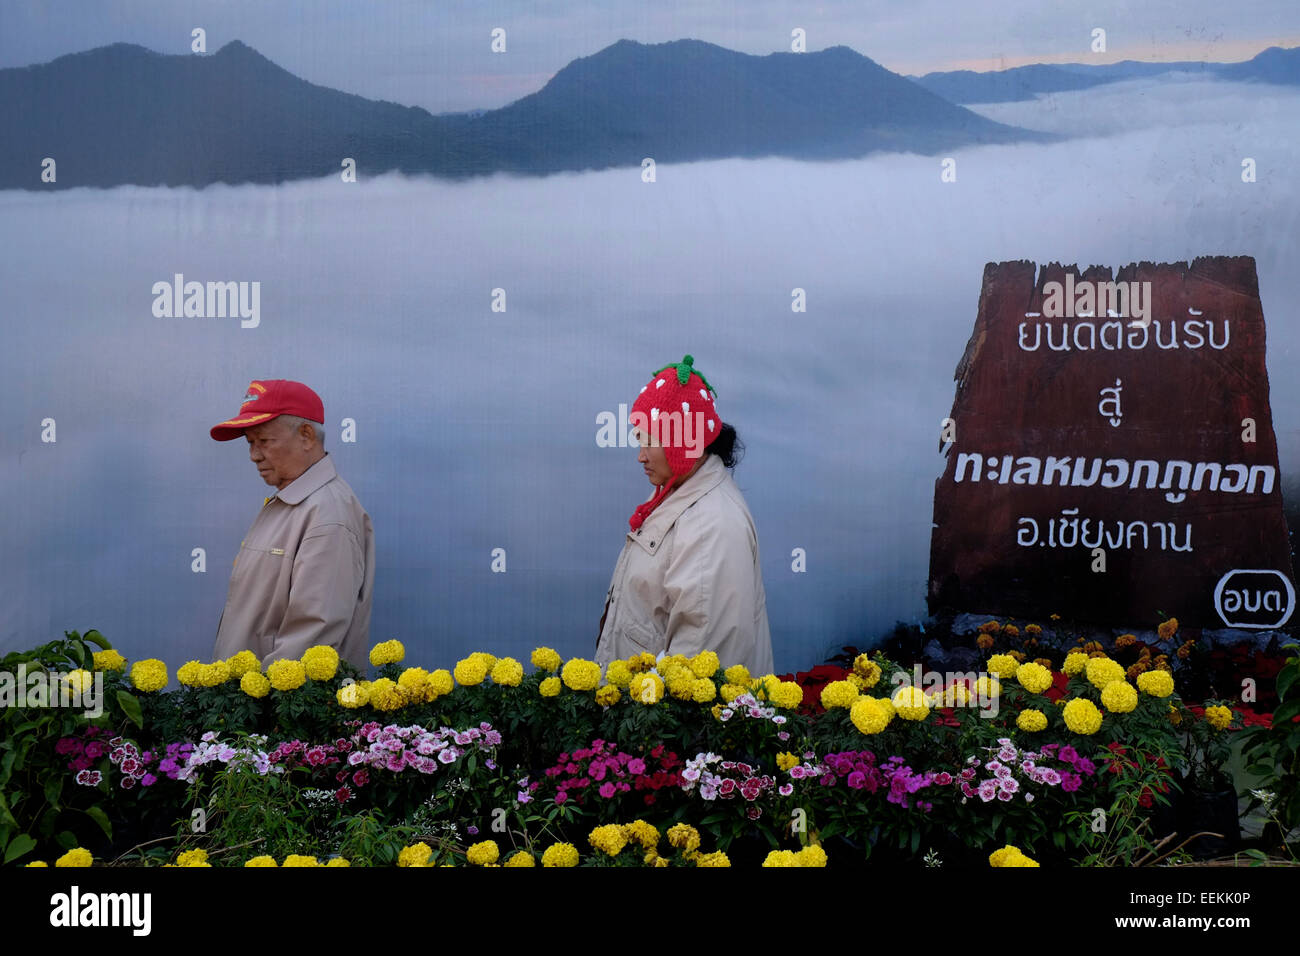 Local Thai i visitatori di fronte a grandi poster raffigurante il mare di nebbia nella parte superiore dell'unità PHU Tok mountain si trova al centro di Bueng Kan provincia nell'estremità nord-orientale di Isan, a nord-est della Thailandia. Foto Stock